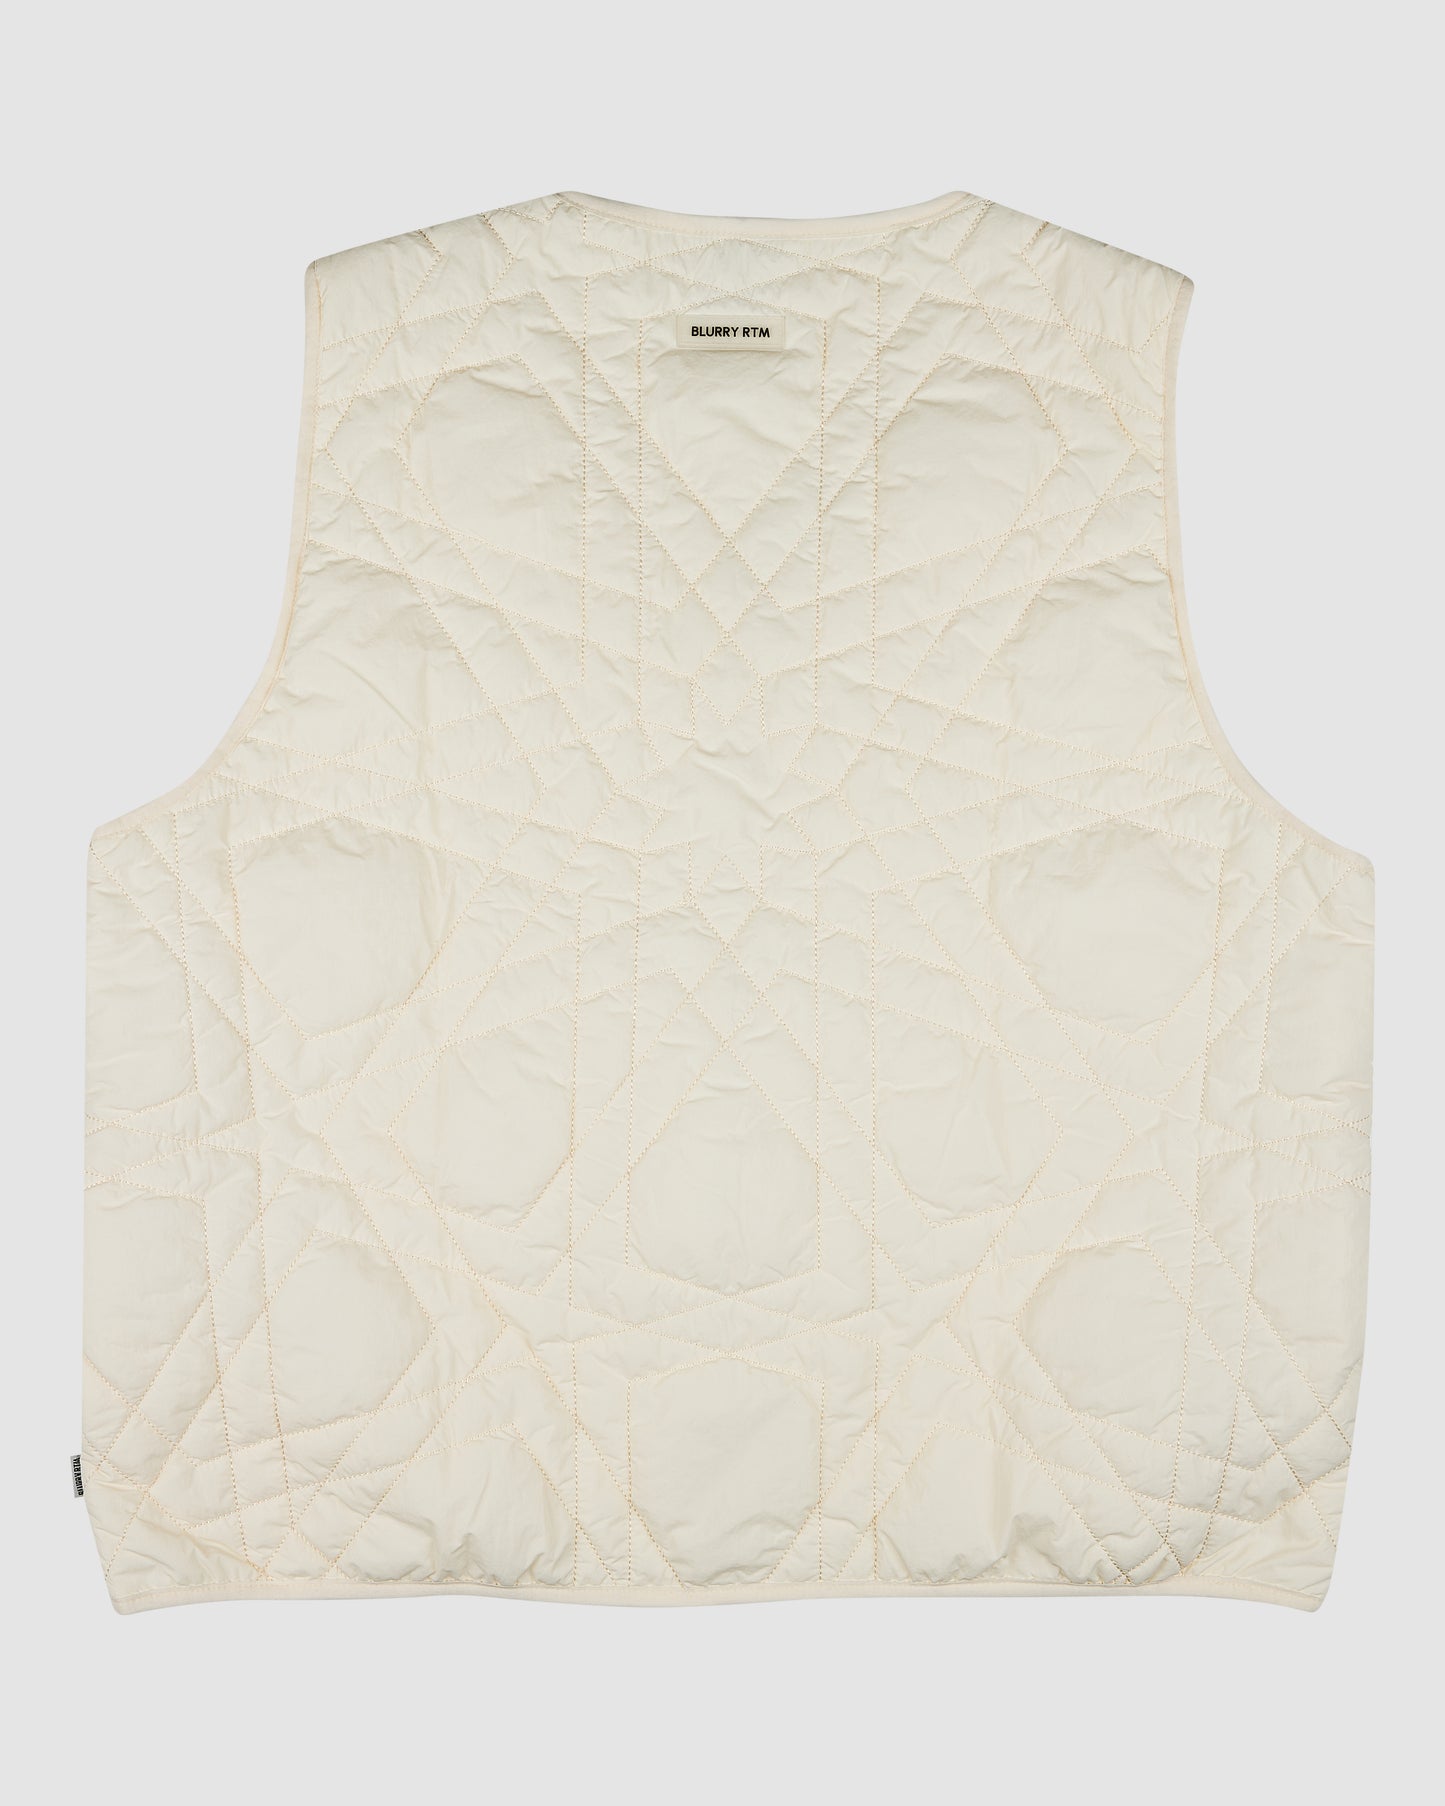 BLURRY RTM Arabesque Quilted Vest (Cream Beige)